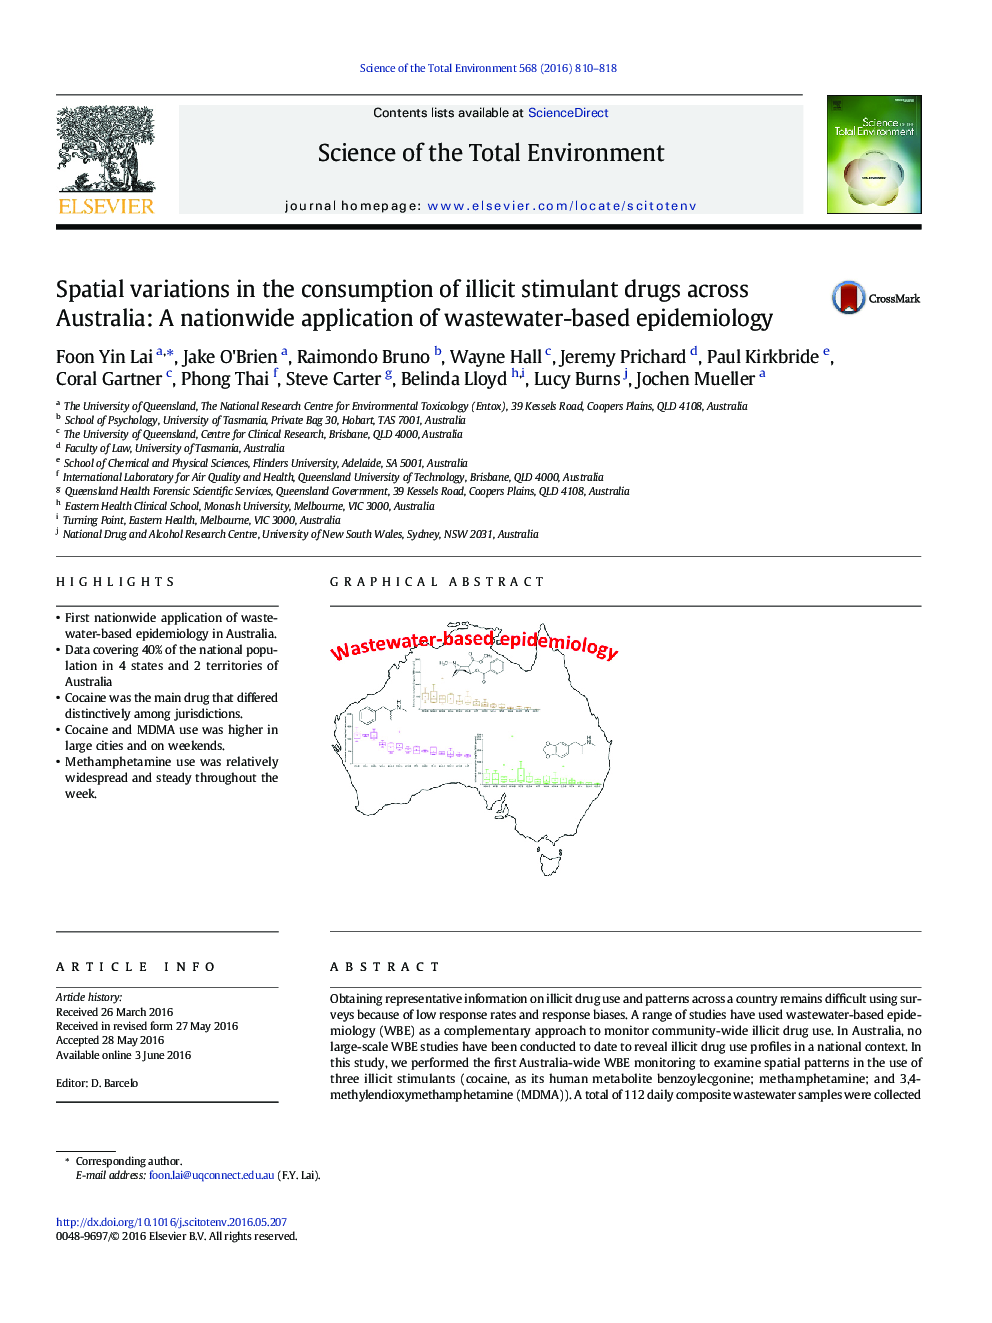 تغییرات فضایی در مصرف داروهای محرک غیرقانونی در استرالیا: کاربرد عمومی در اپیدمیولوژی مبتنی بر فاضلاب 